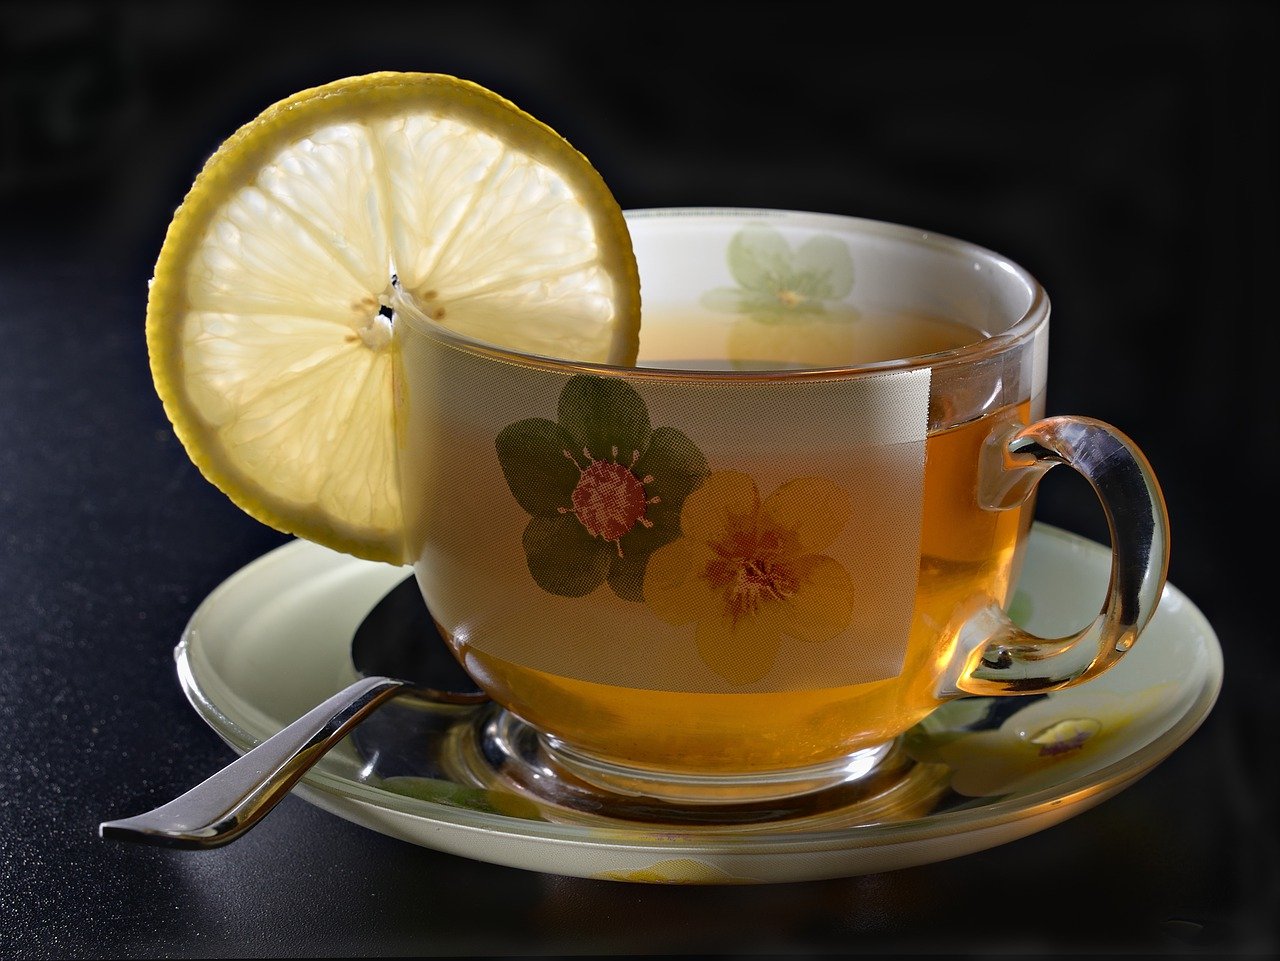 Picie herbaty – jakie ma korzyści zdrowotne?